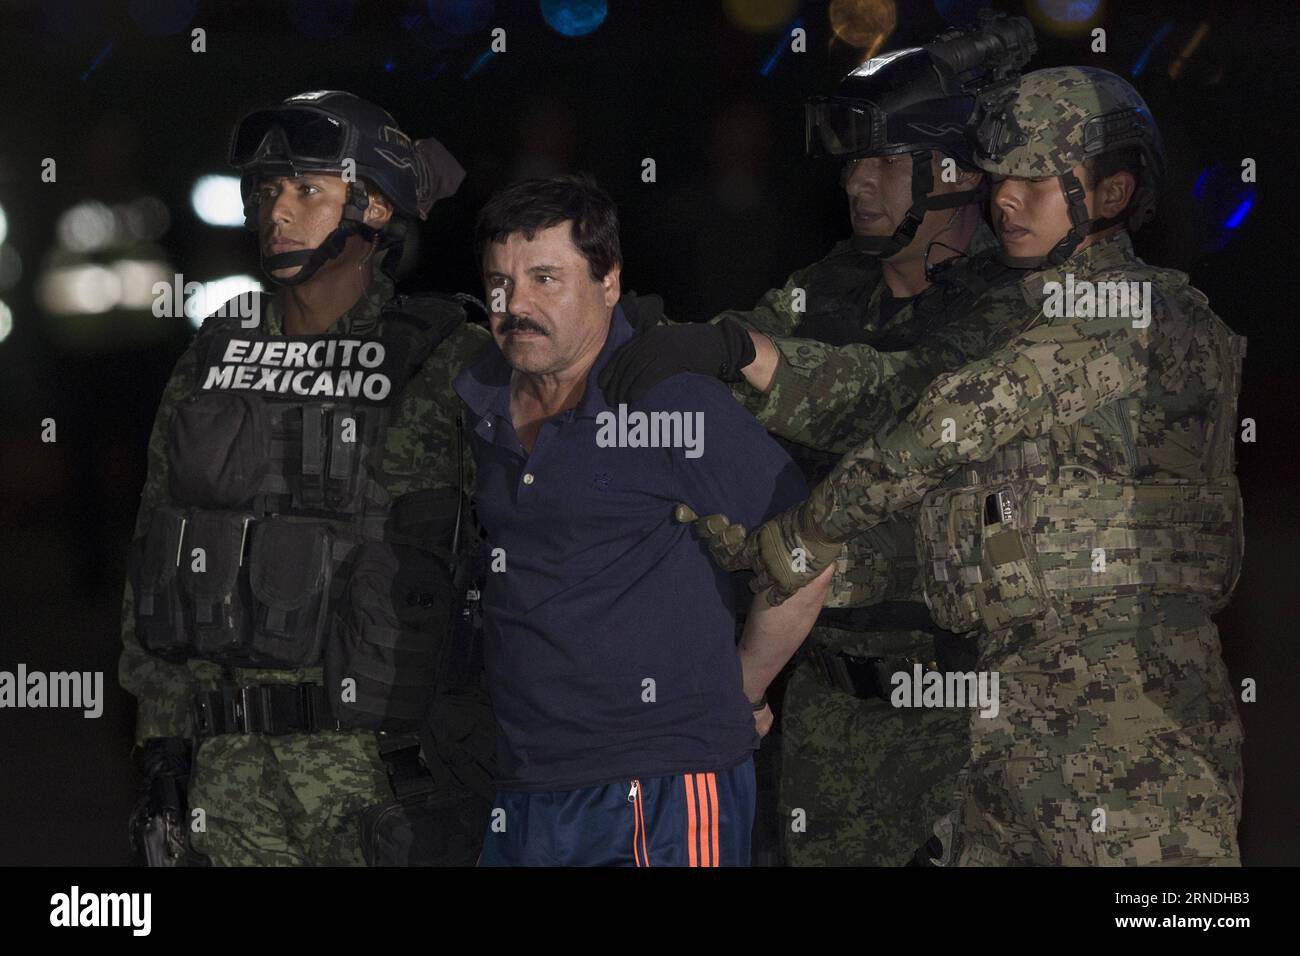 (160520) -- MEXICO, 20 mai 2016 -- une image prise le 8 janvier 2016 montre des membres des forces de sécurité escortant Joaquin Guzman Loera, alias El Chapo , à son arrivée au bureau du procureur général, à Mexico, capitale du Mexique. Le druglord mexicain Joaquin El Chapo Guzman doit être extradé vers les États-Unis, a annoncé vendredi le ministère des Affaires étrangères (SRE, pour son acronyme en espagnol). Le ministère a dit qu'il a informé Guzman, qui a récemment été transféré dans une prison près de la frontière américaine, qu'il avait approuvé une demande d'extradition déposée par un tribunal fédéral de district du Texas.) Banque D'Images